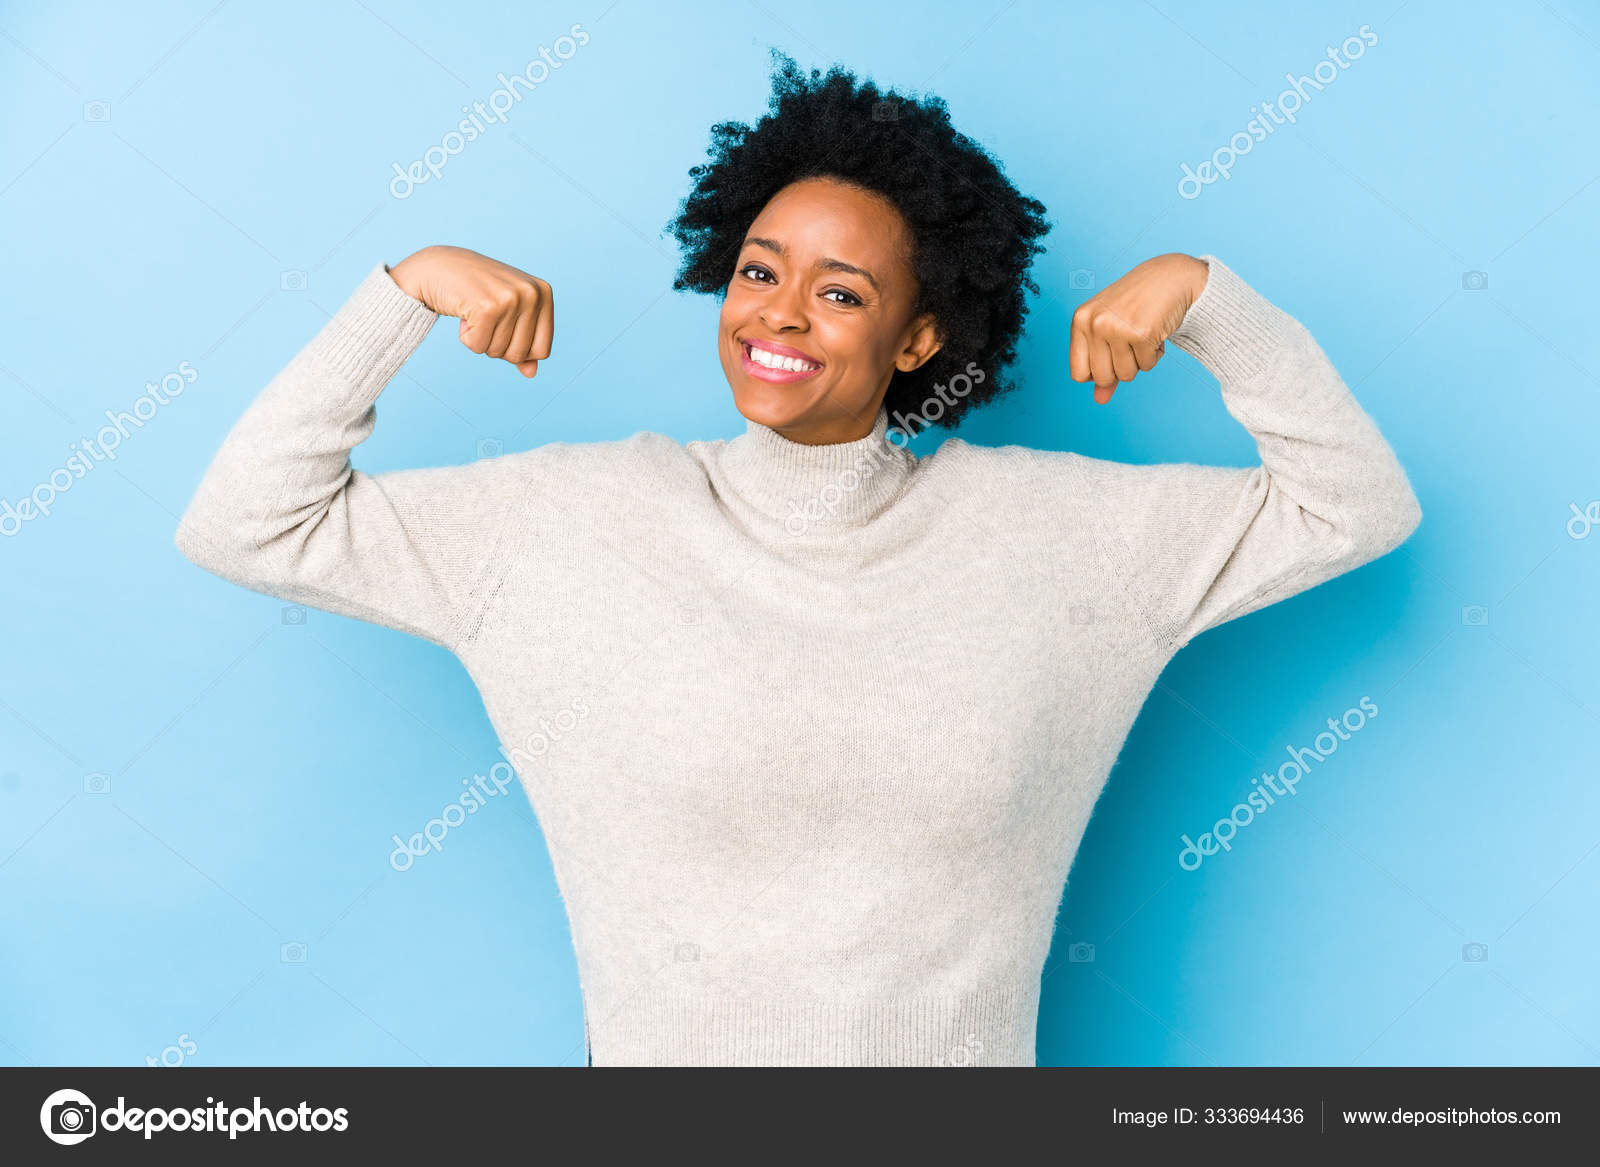 女性の力の象徴である腕を持つ強さのジェスチャーを示す青の背景に孤立した中高年アフリカ系アメリカ人女性 ストック写真 C Asierromerocarballo